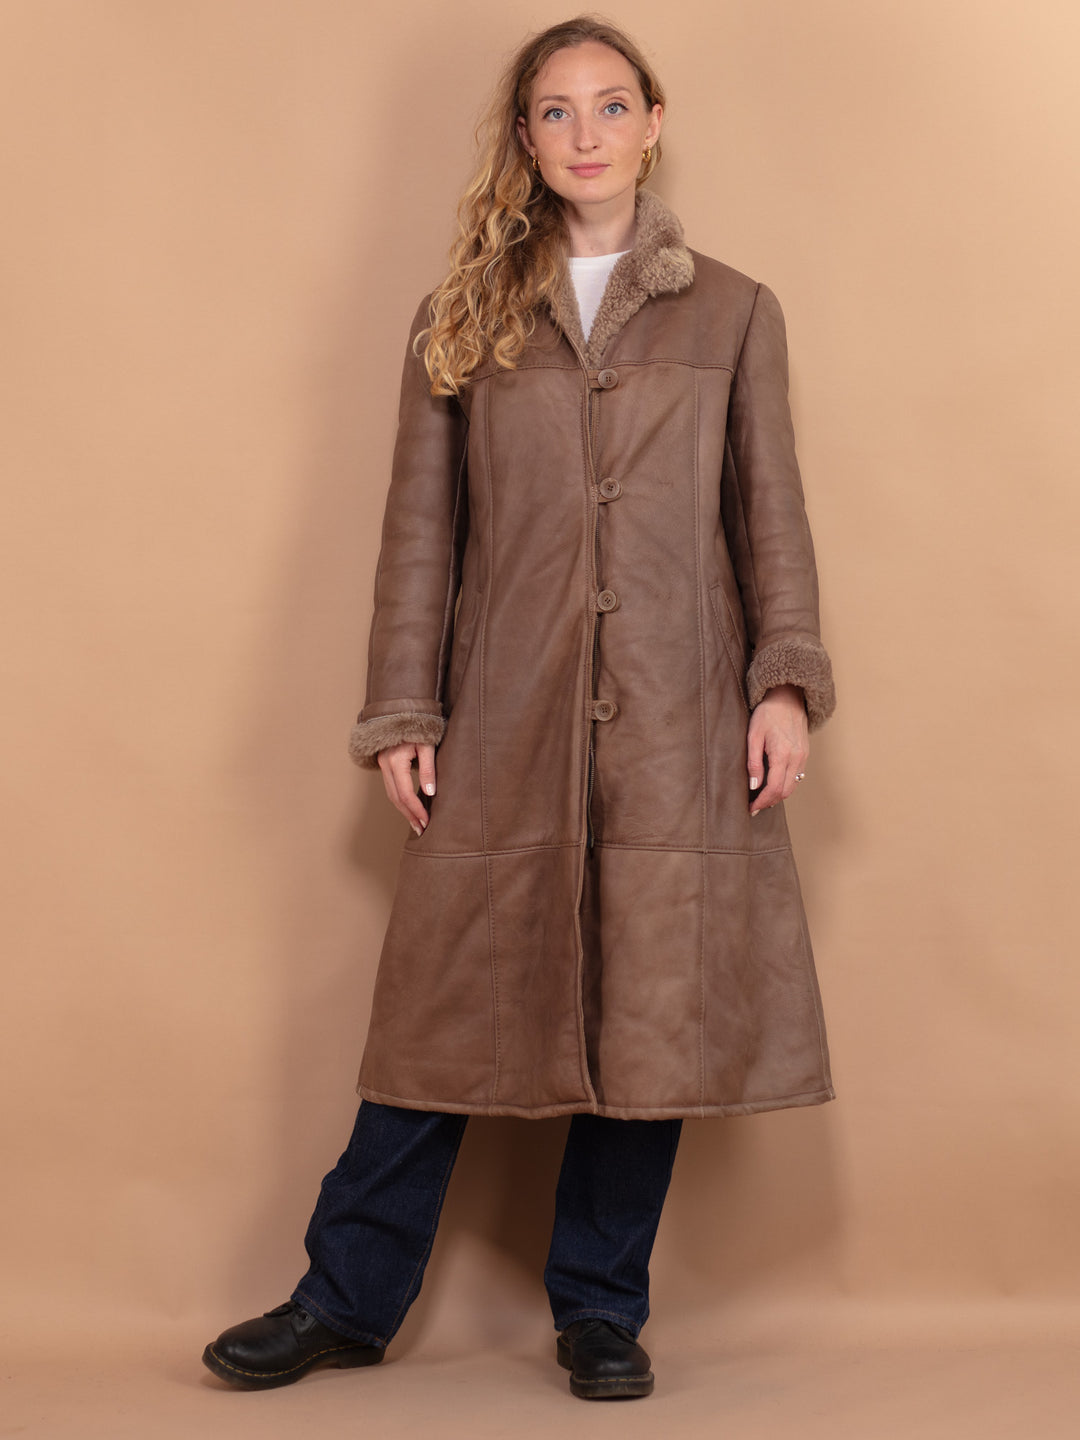 Sheepskin Long Coat, Size Medium Warm Shearling Fur Coat, Brown Sheepskin Overcoat, Sheepskin Longline Coat, Penny Lane, Western Outerwear